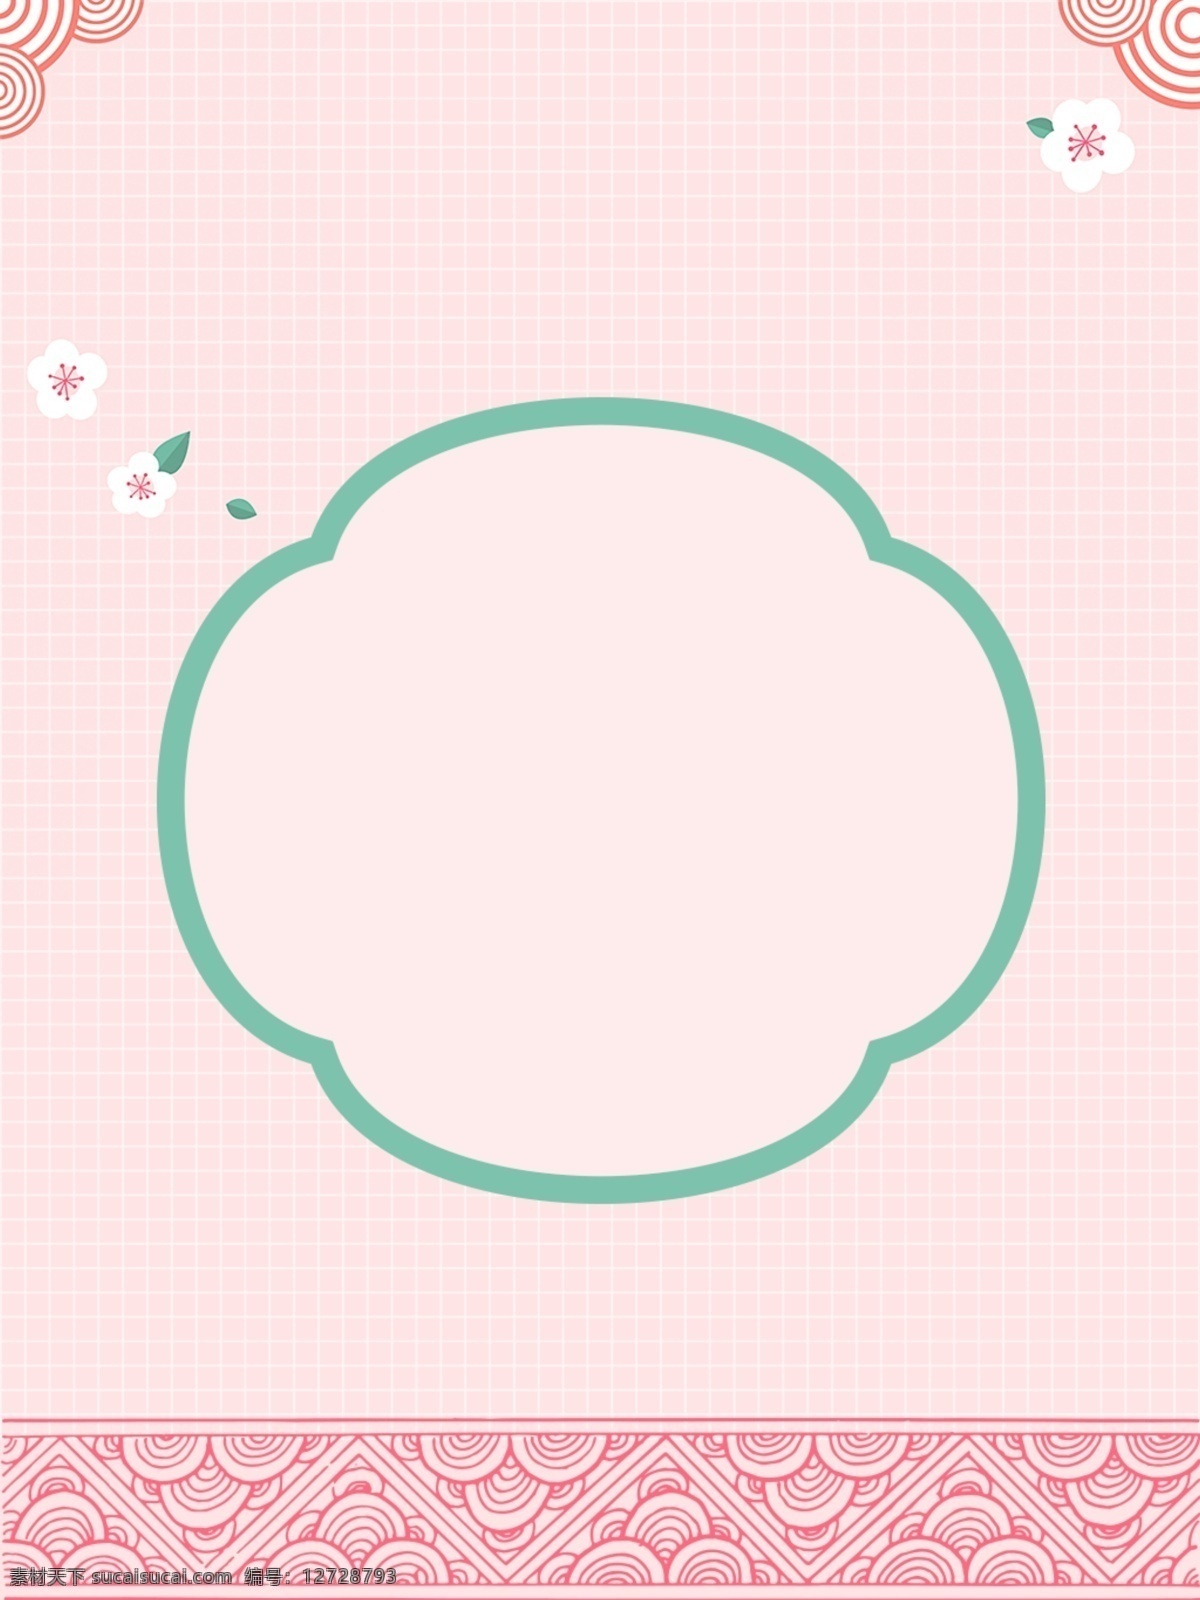 日 系 小 清新 边框 背景 图 桃花 纹理 日系 粉色